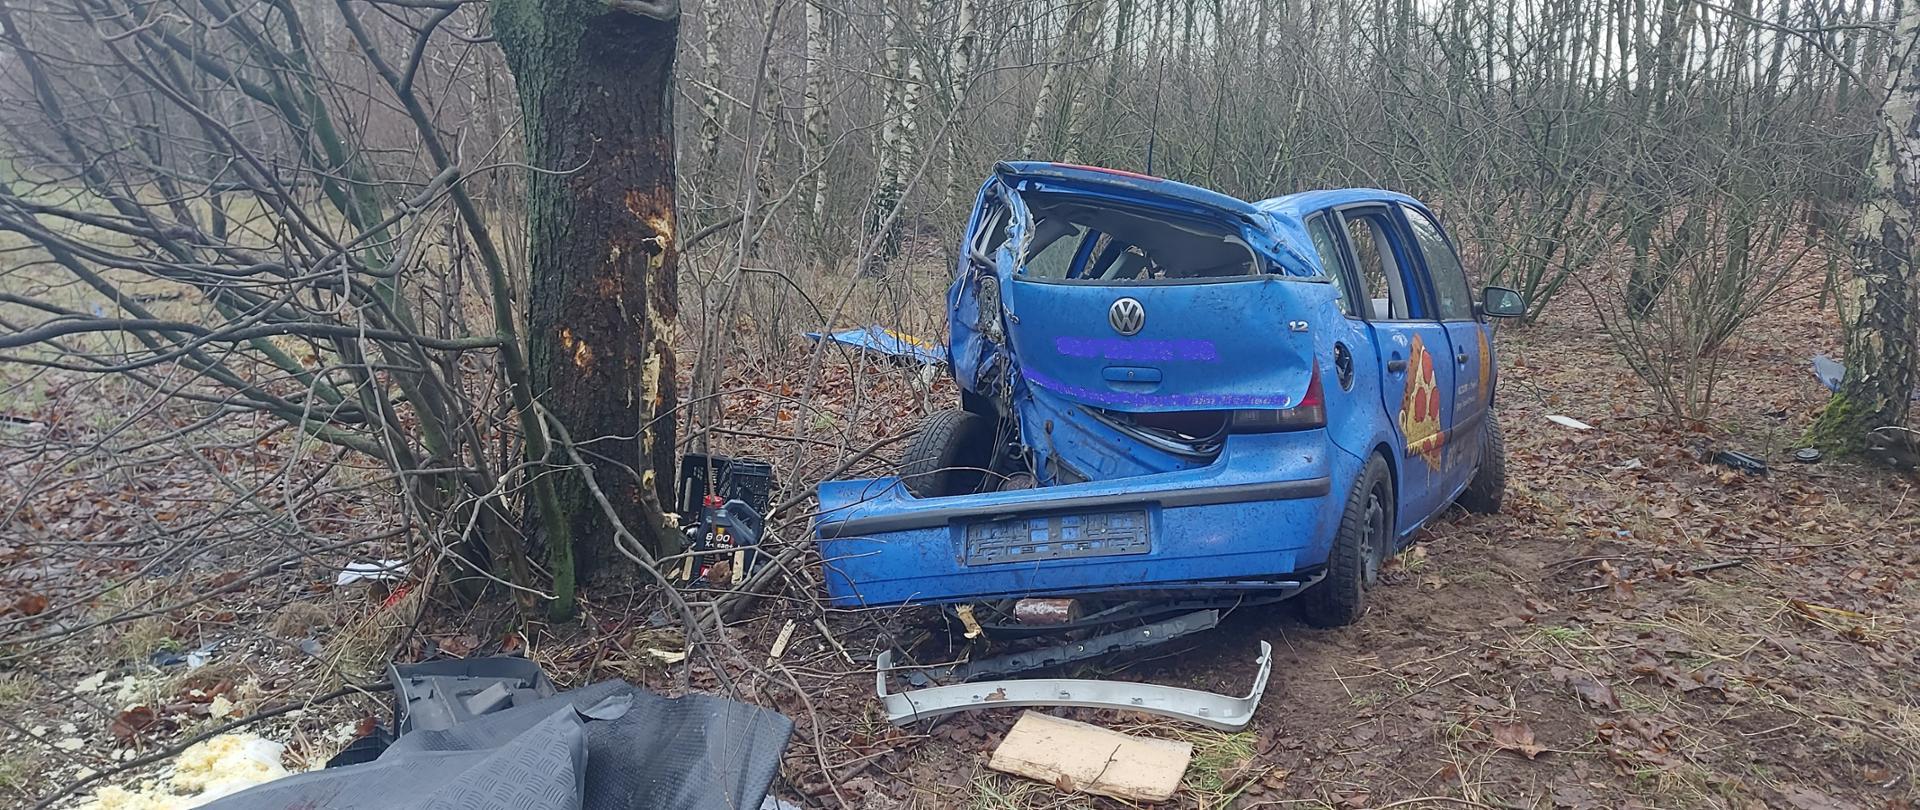 Zdjęcie przedstawia samochód osobowy koloru niebieskiego, który wcześniej uderzył w przydrożne drzewo. Samochód ma uszkodzony tył. Przed samochodem leżą części. 